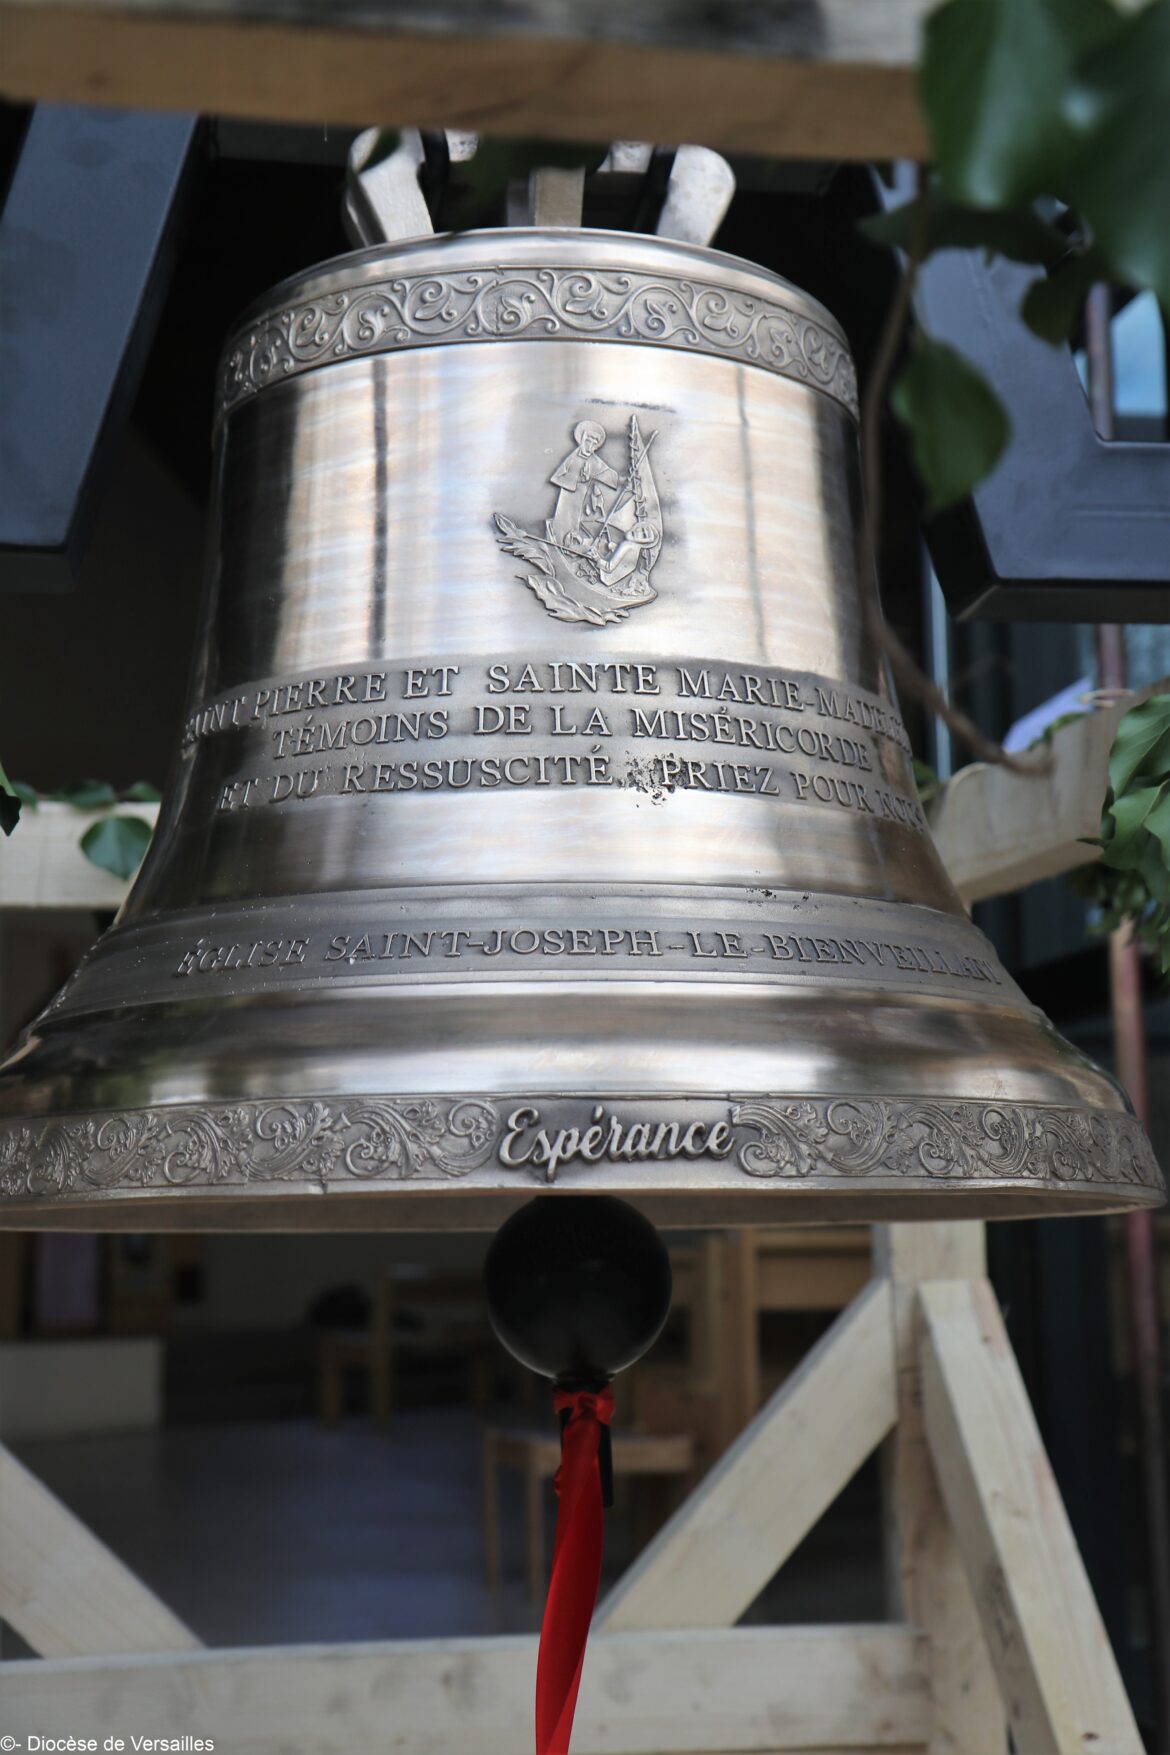 Bénédiction cloches St-Joseph-Le Bienveillant Montigny-Voisins le 19 mars 2023. Cloche Espérance